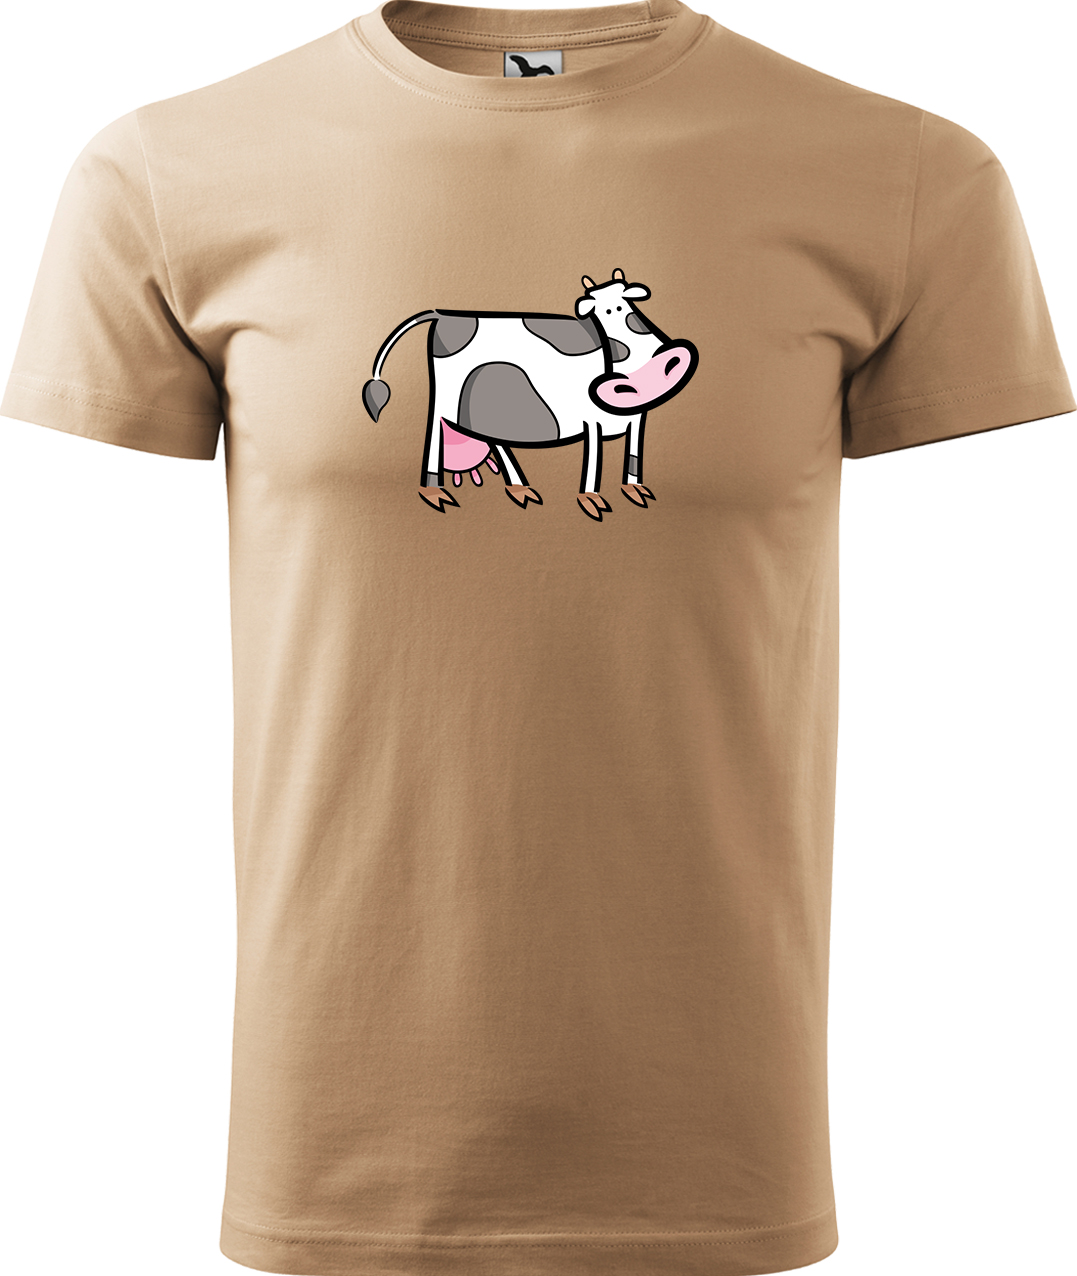 Pánské tričko s krávou - Kravička Velikost: XL, Barva: Písková (08), Střih: pánský